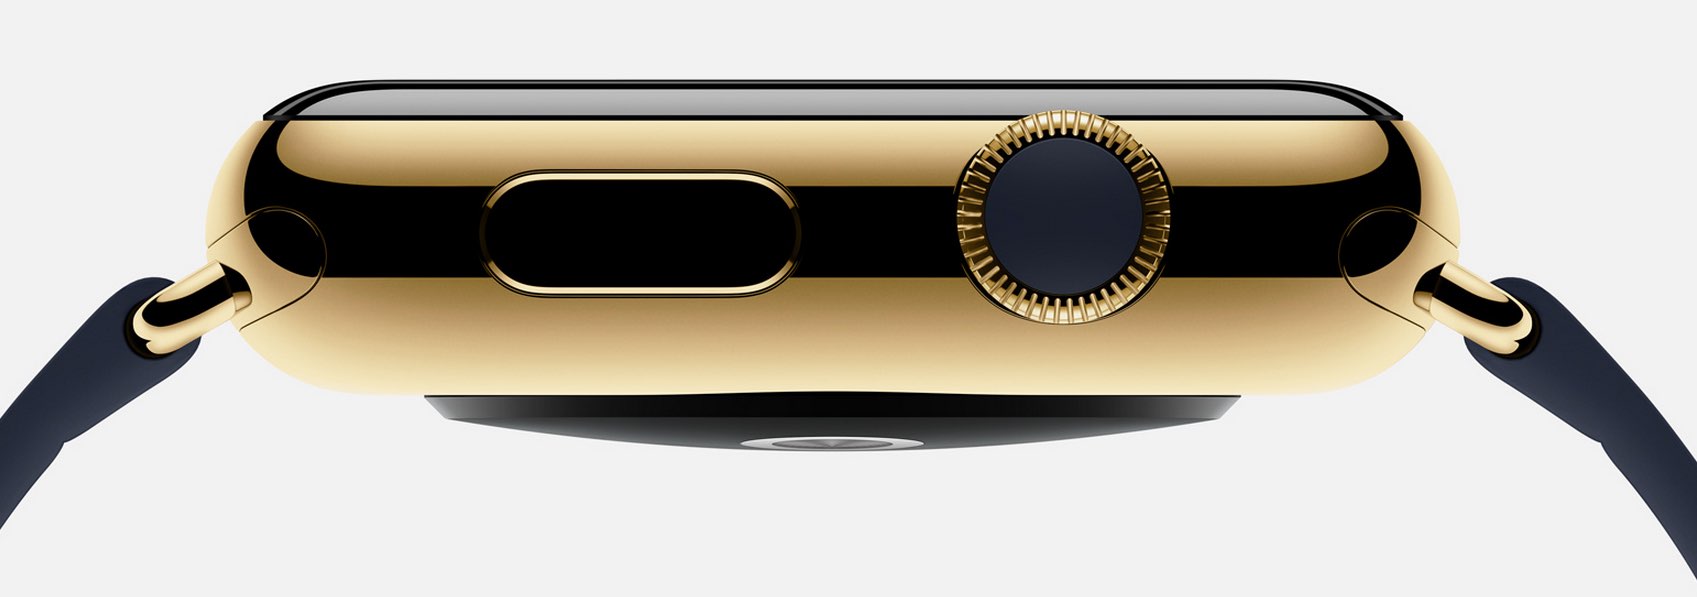 Goldene Apple Watch stellt Apple Stores vor neue Herausforderungen 5